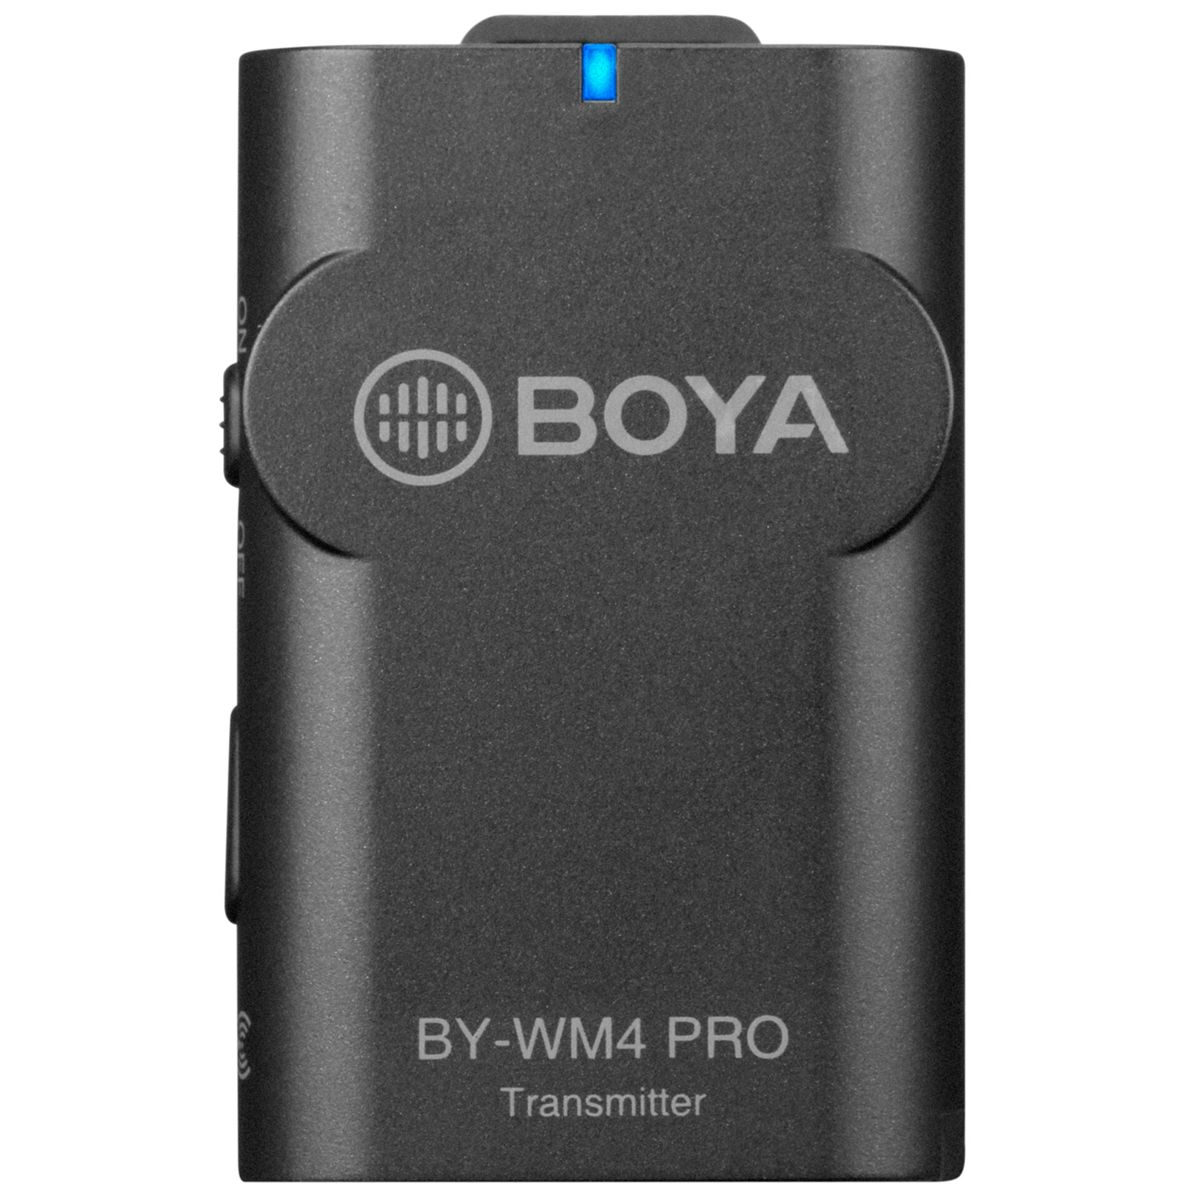 WRLS PRO BY-WM4 BOYA USB Wireless für Kit K5 USB-C SET Typ-C FÜR